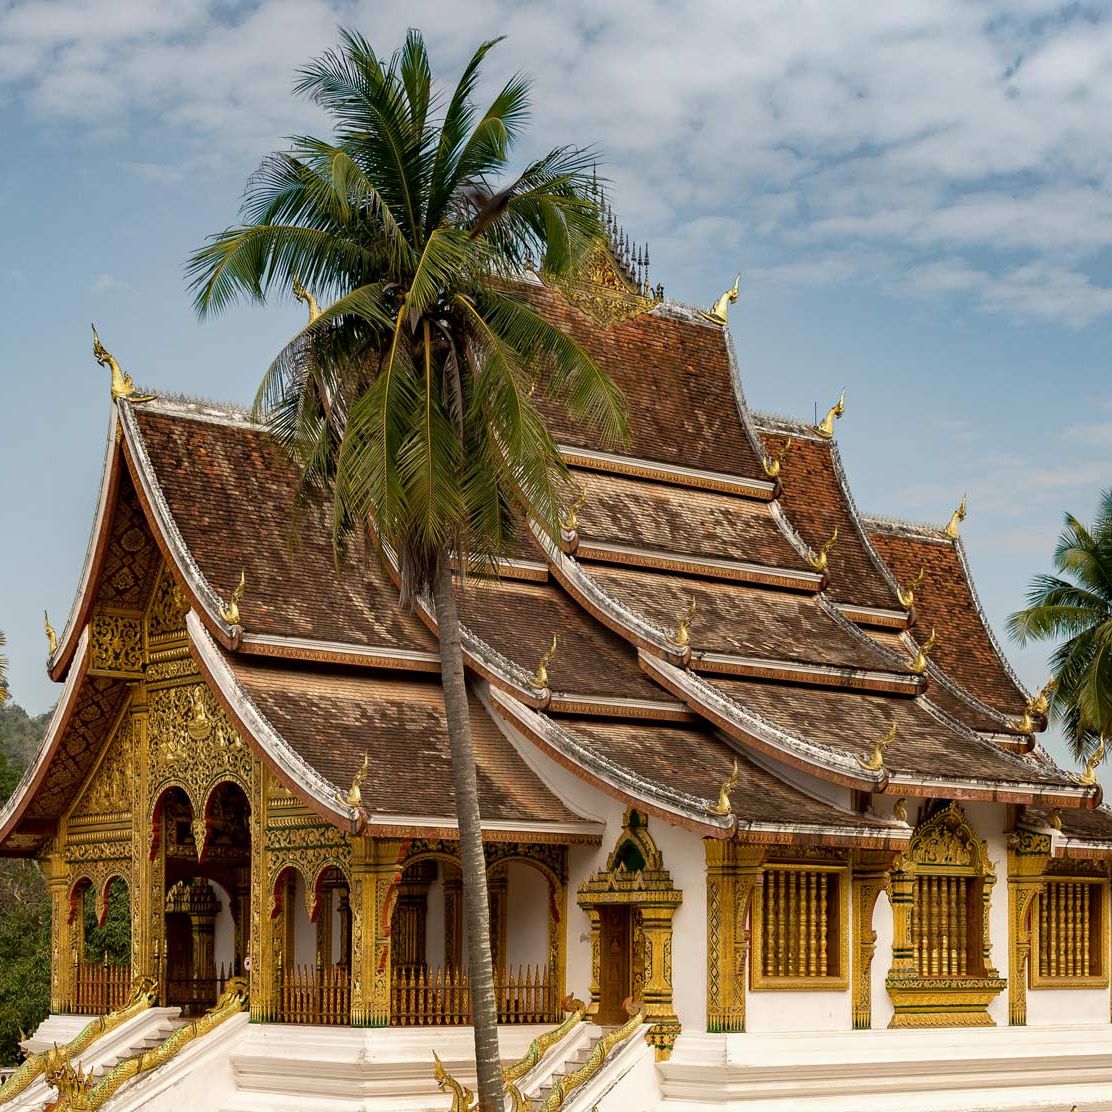 Temple visit in Luang Prabang